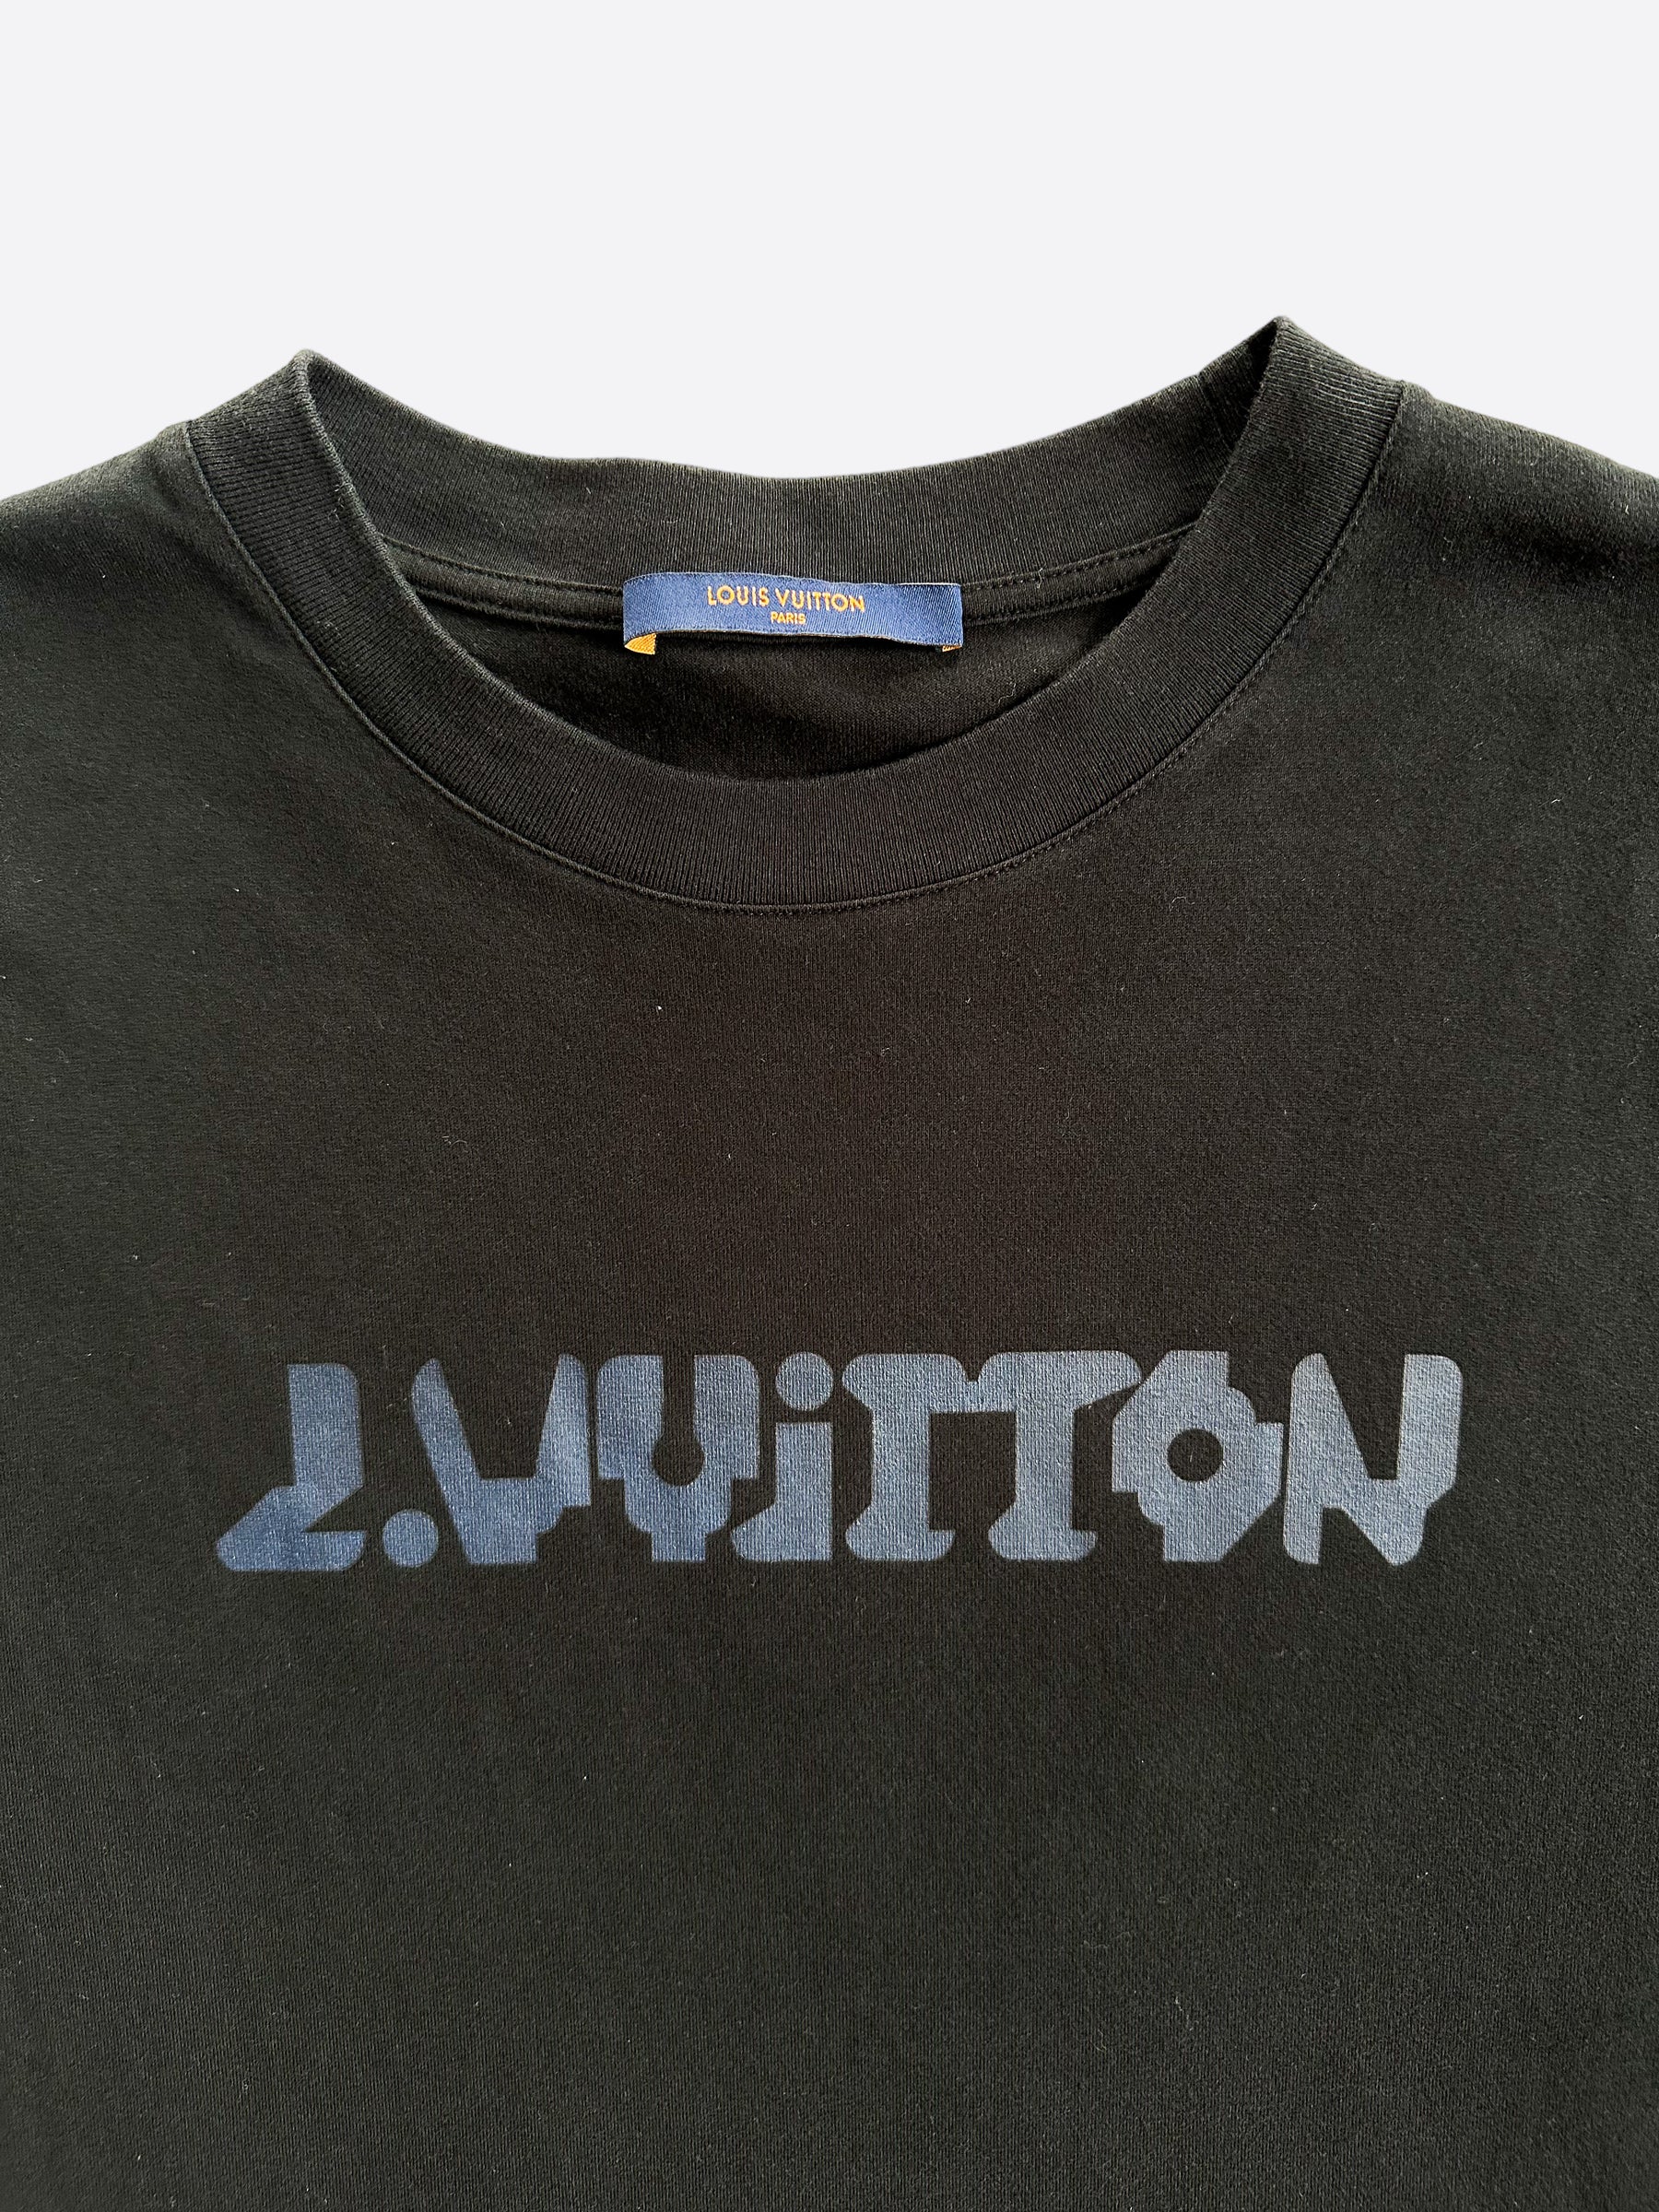 LOUIS VUITTON Paris T-Shirt